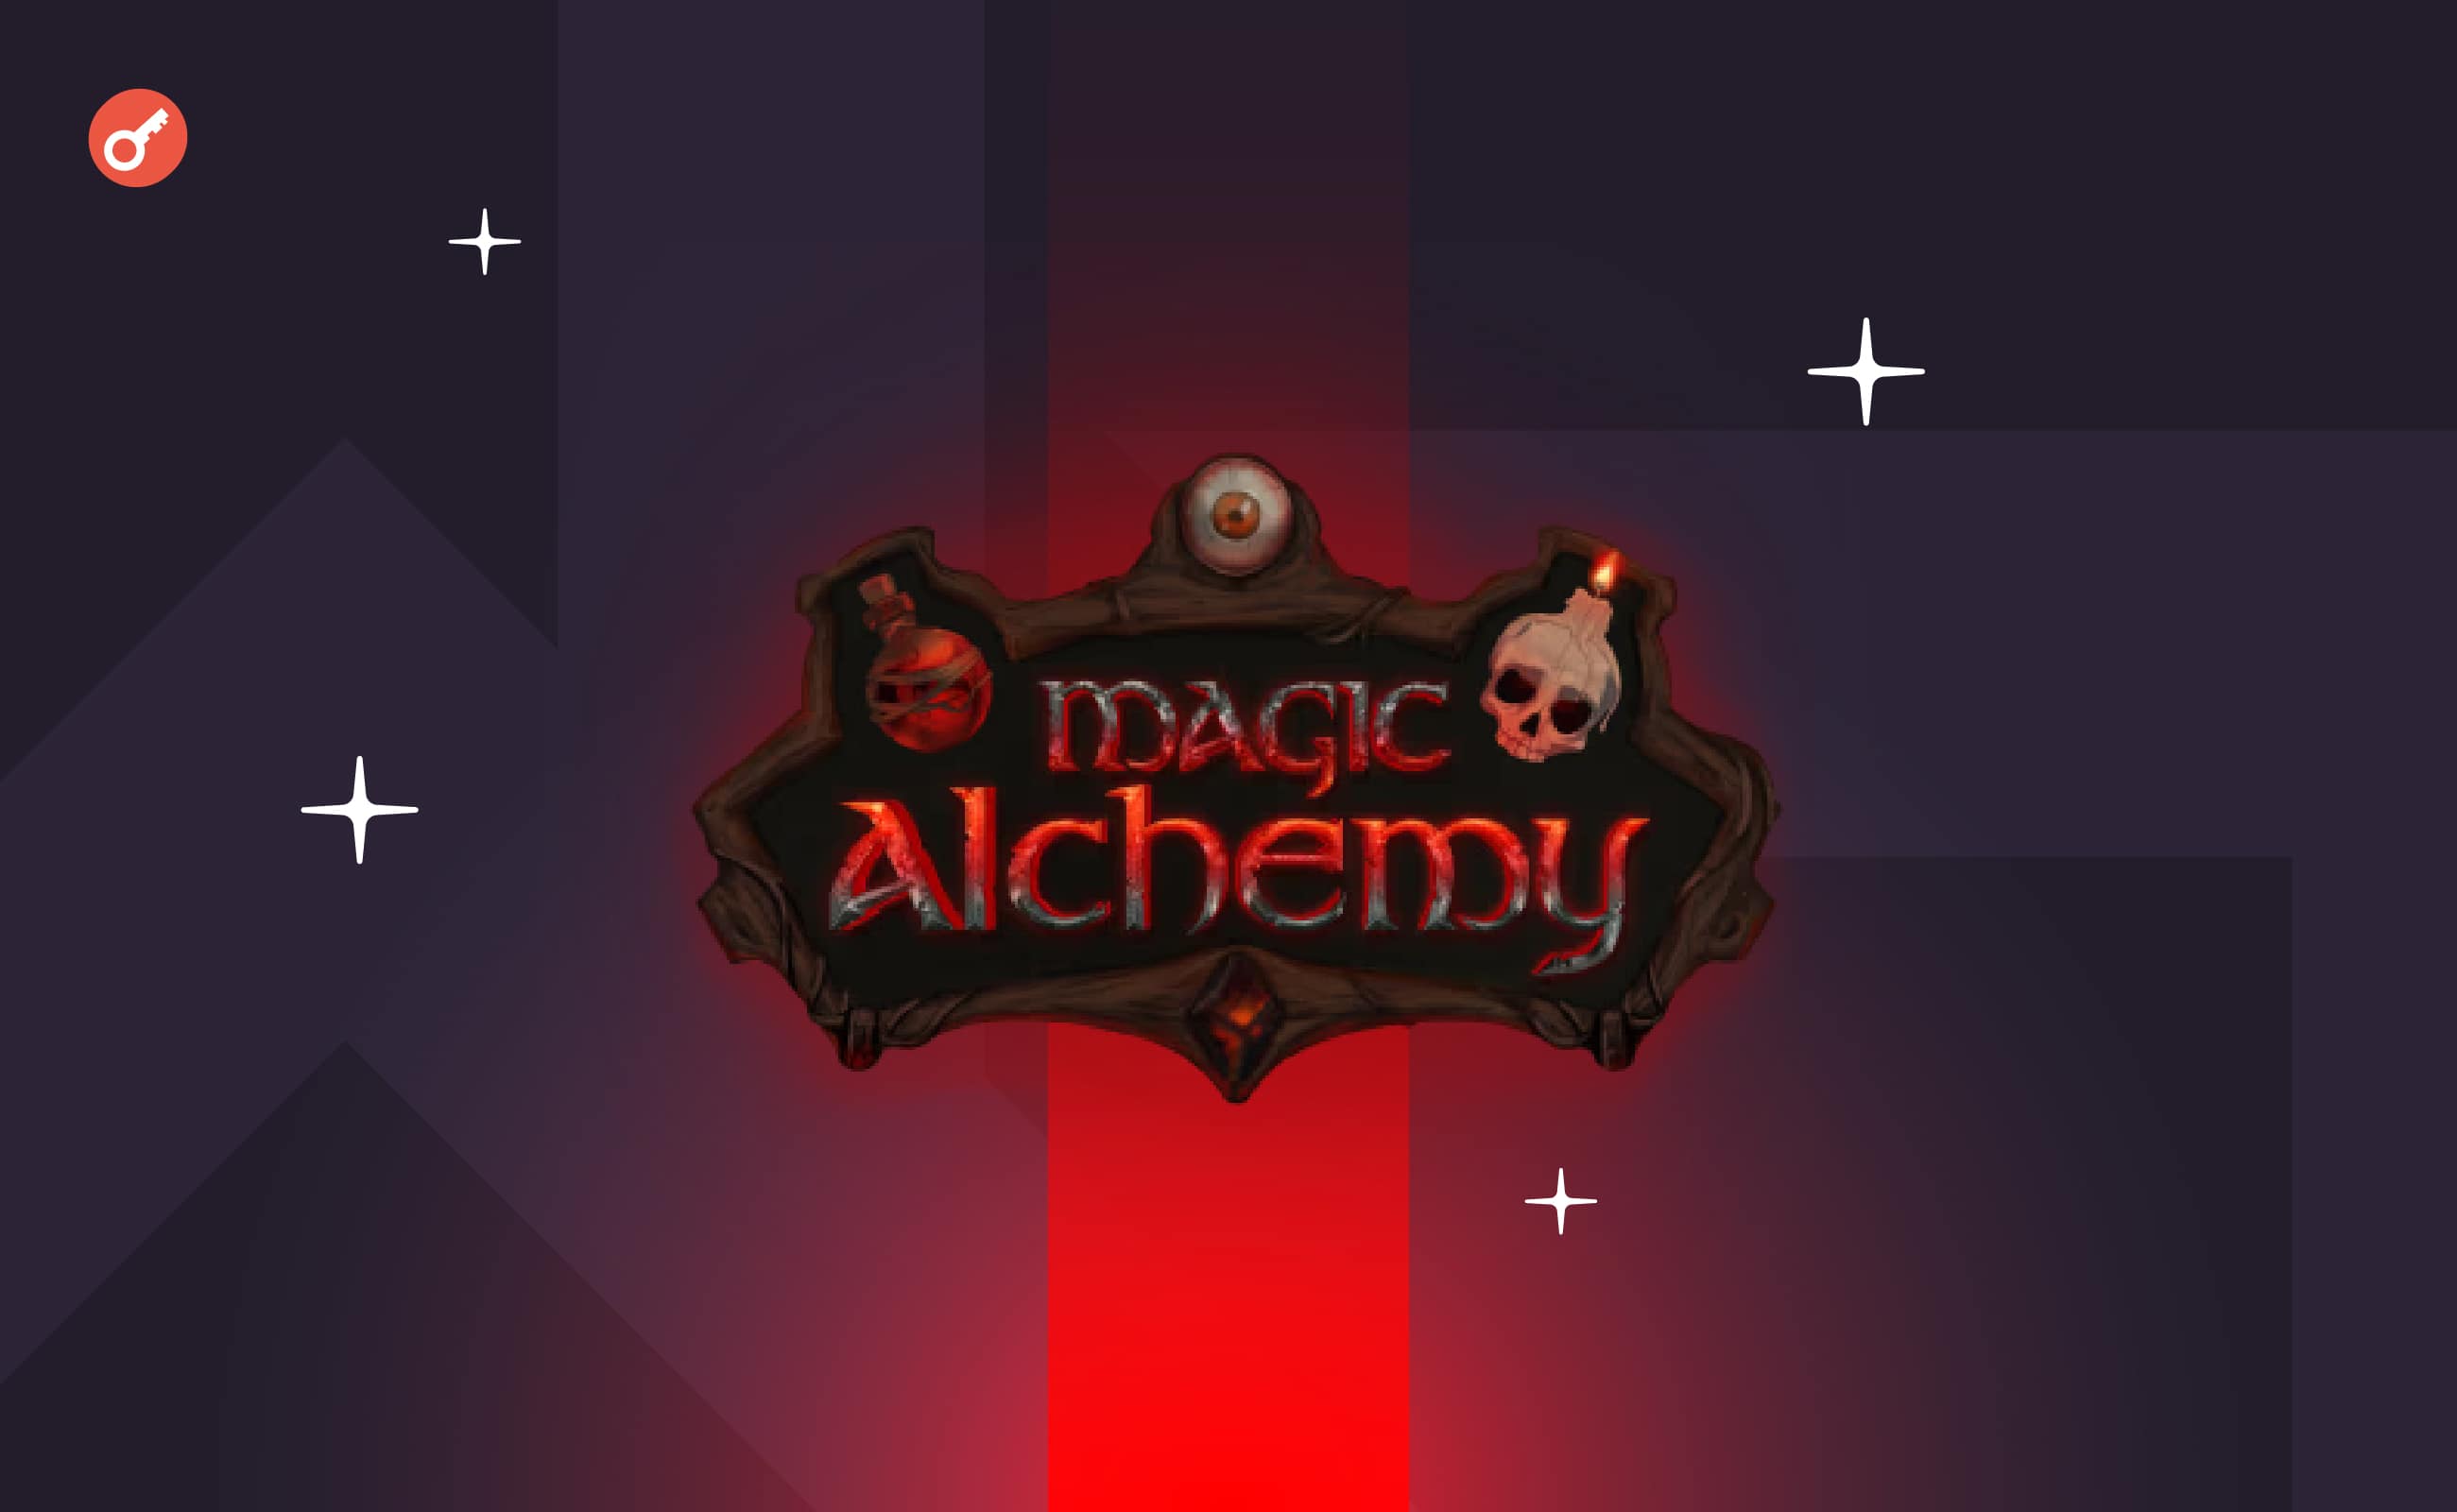 Magic Alchemy закрила передпосівний раунд на $360 000. Головний колаж новини.